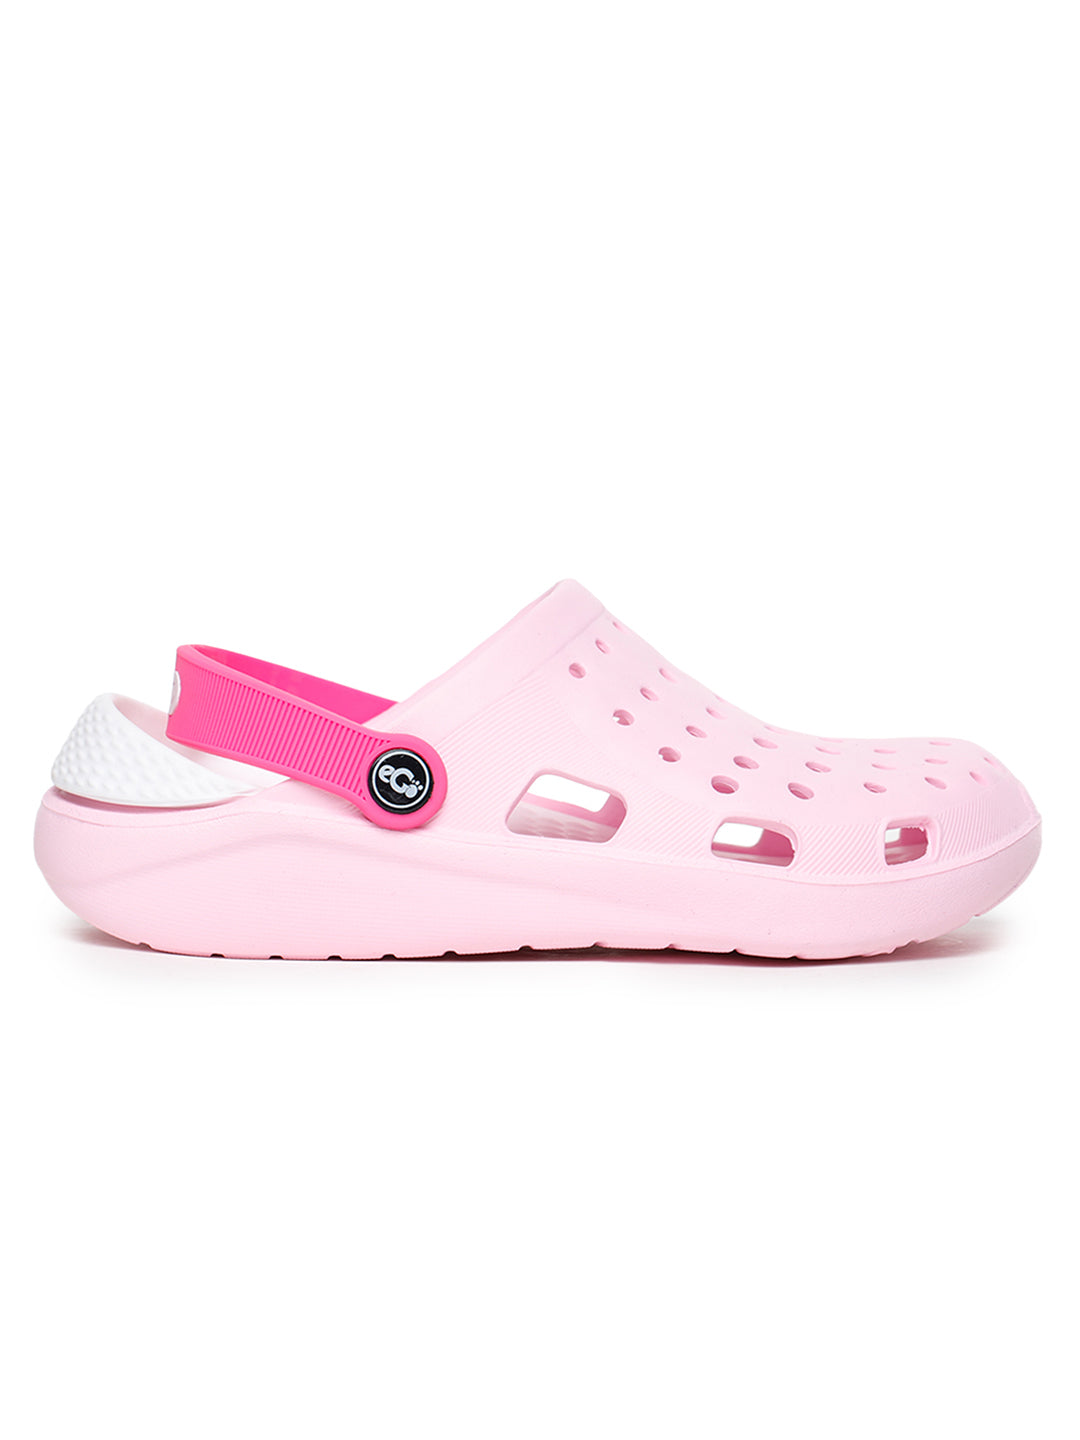 Footwear, Women Footwear, Pink Clogs